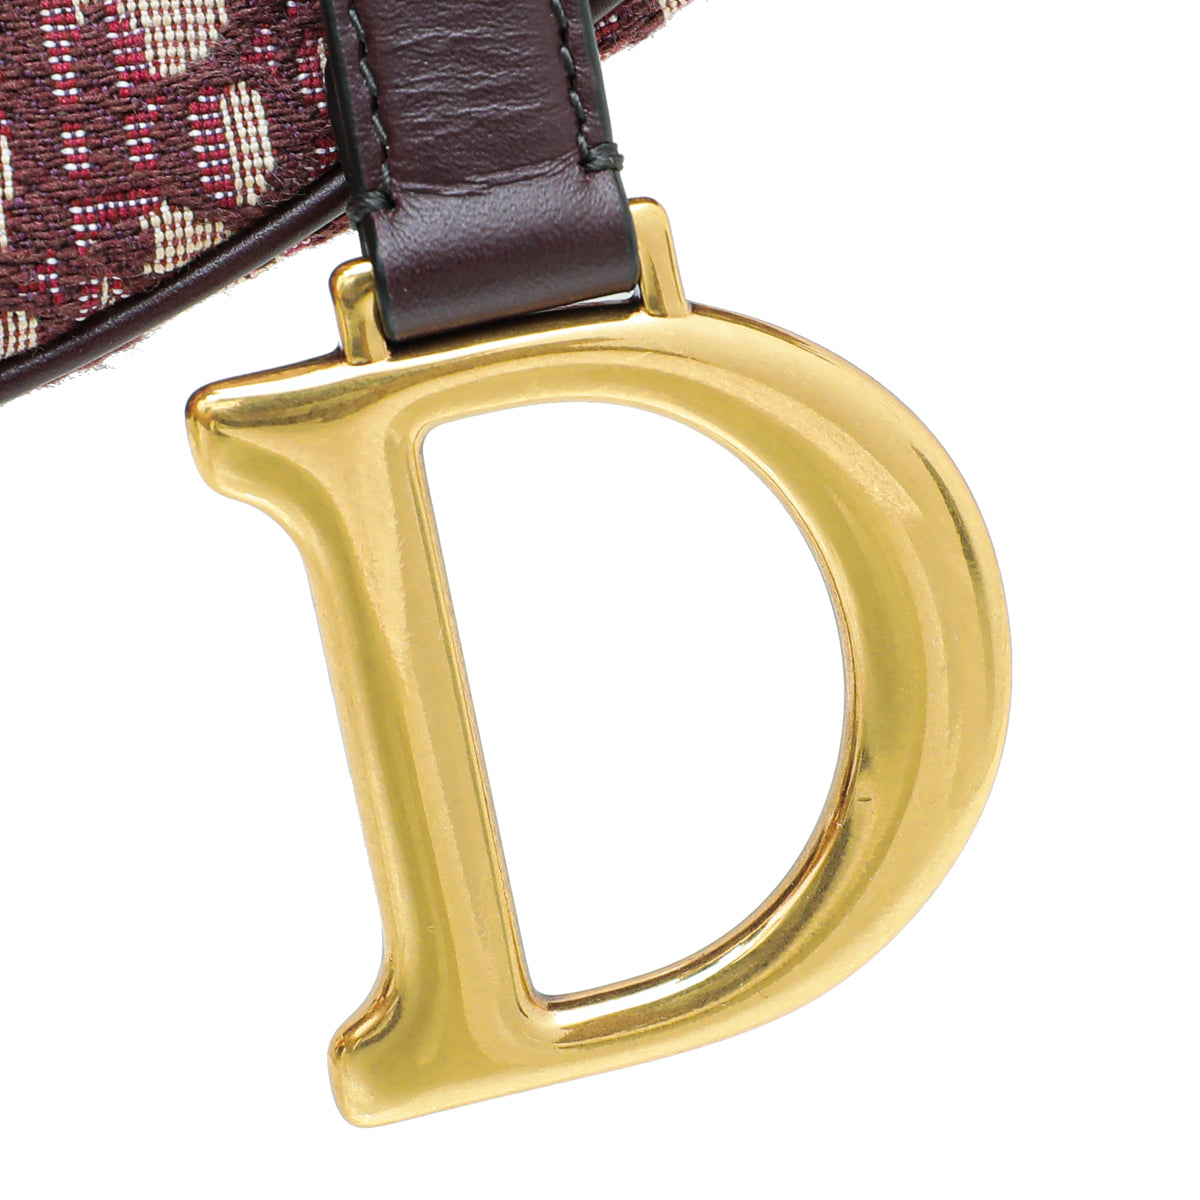 Christian Dior Bordeaux Oblique Jacquard Saddle Bag W/Medallion Strap